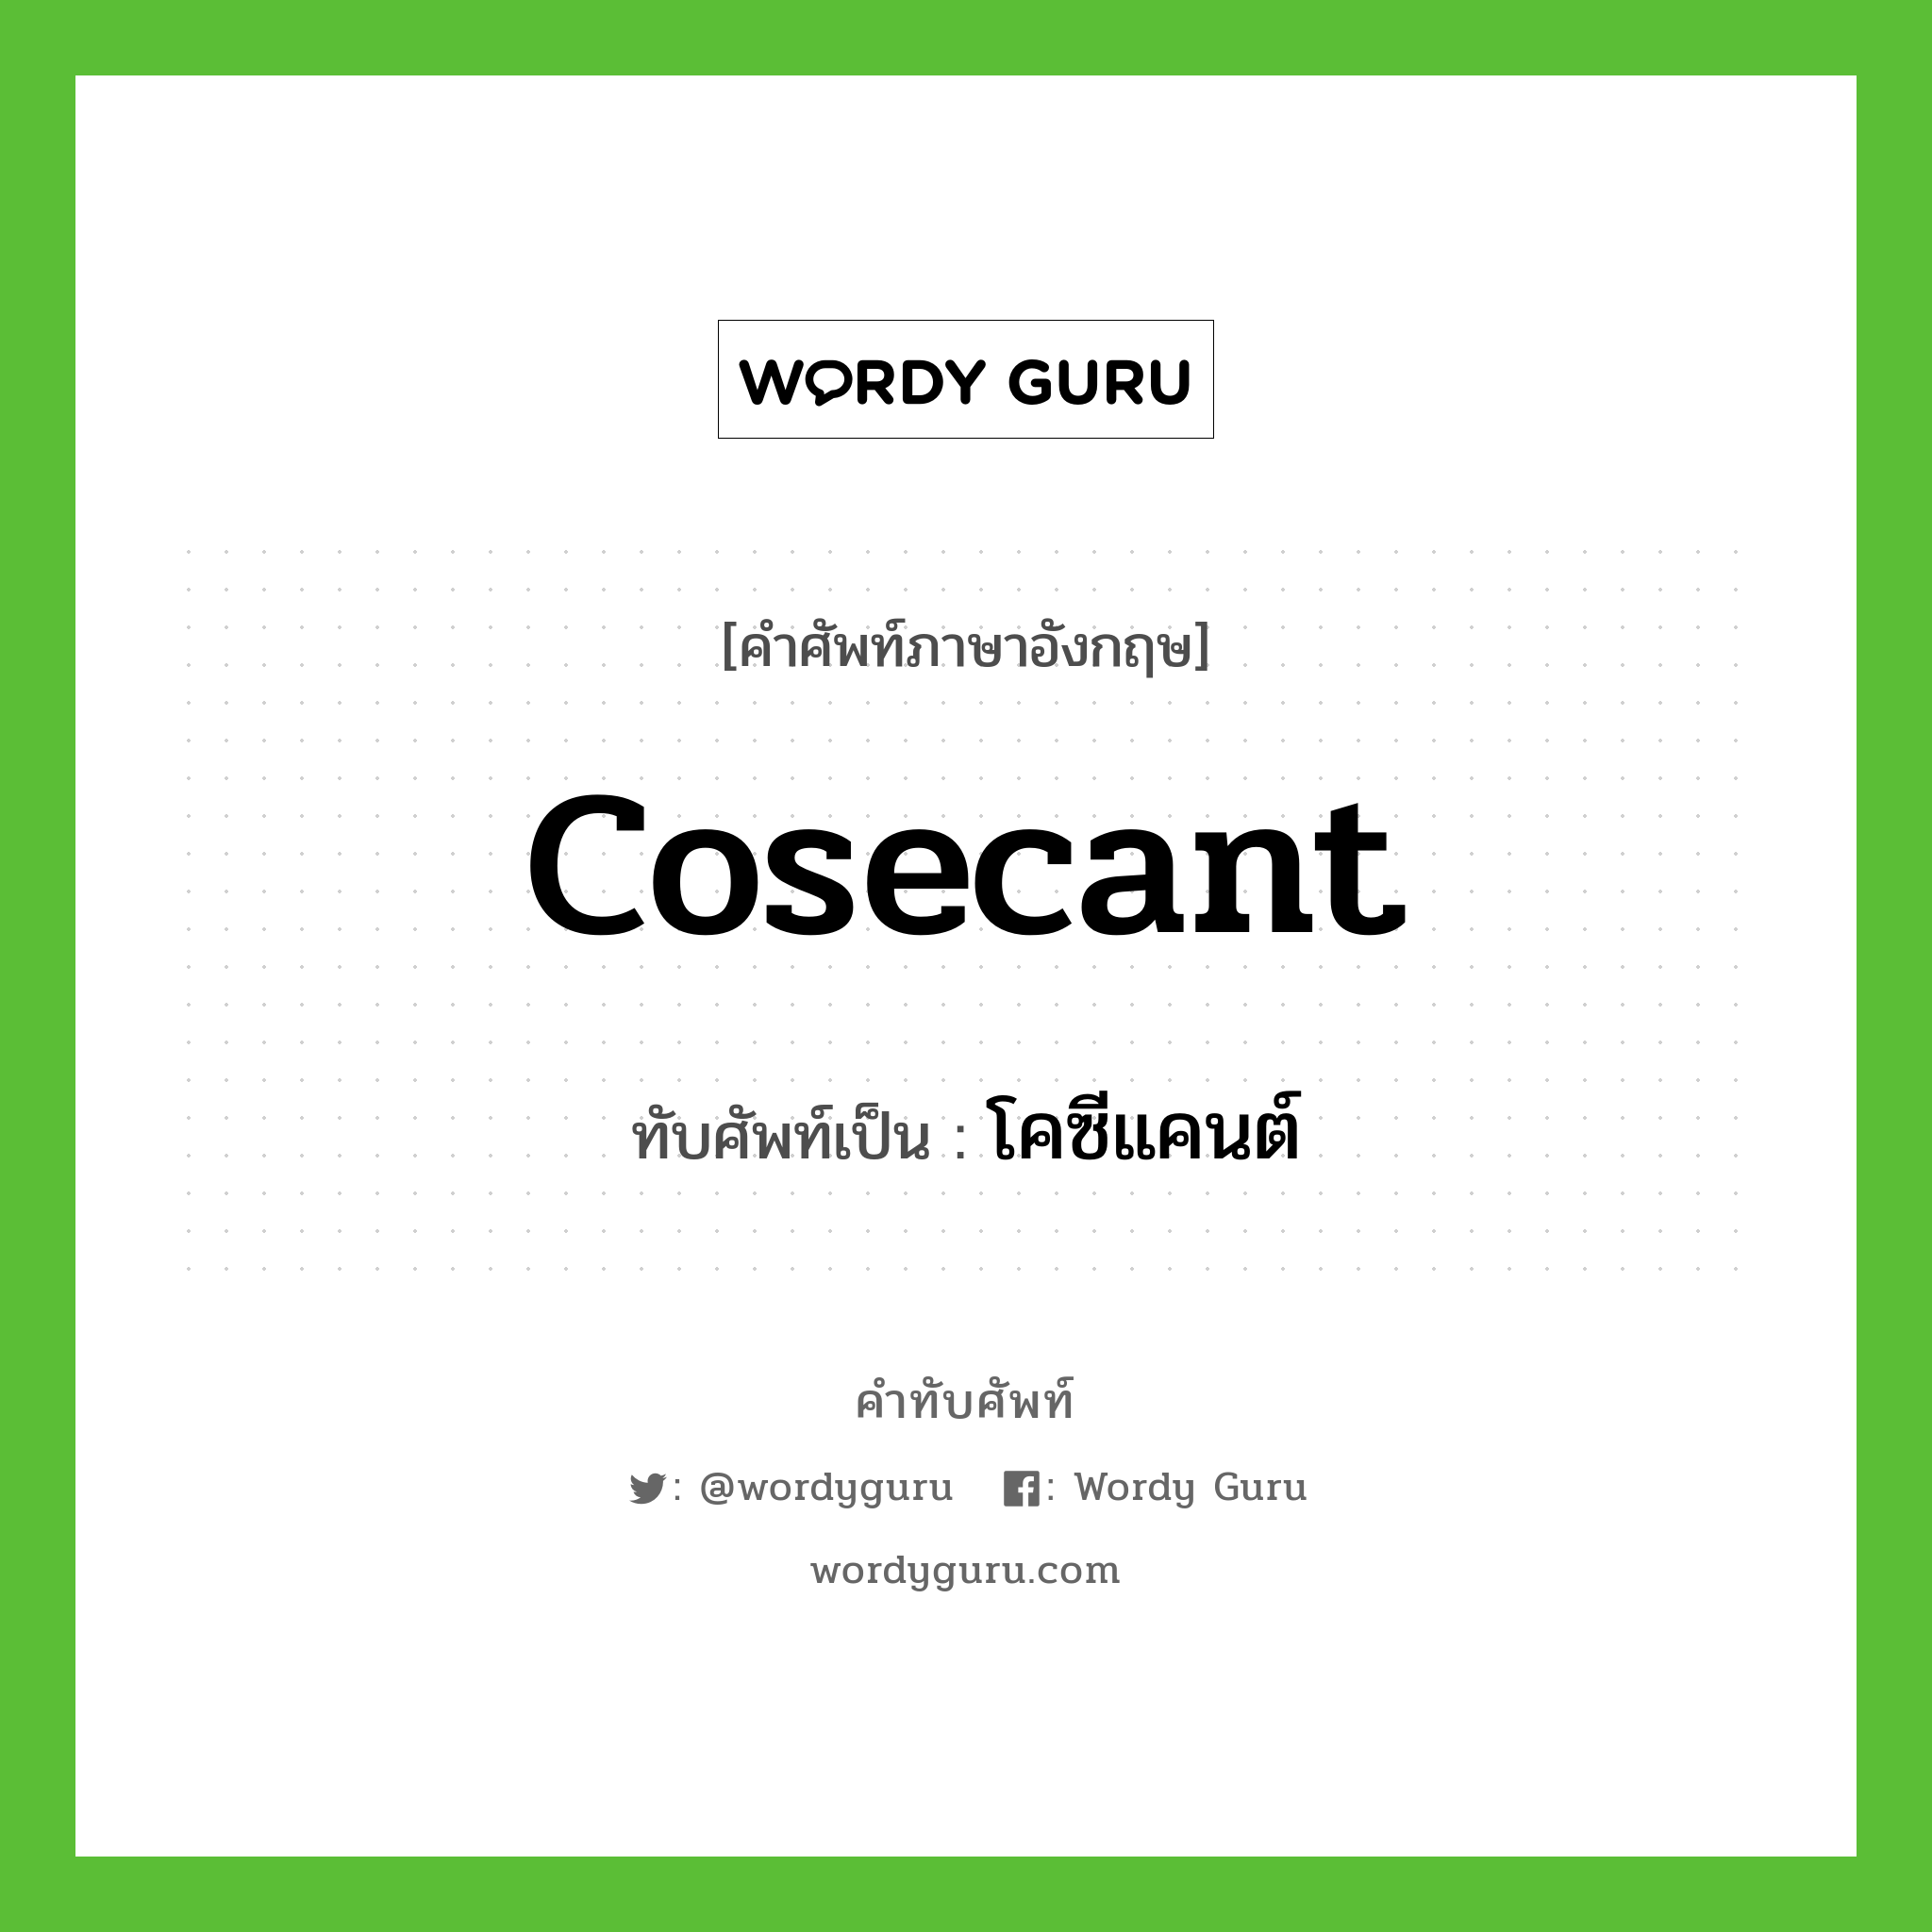 cosecant เขียนเป็นคำไทยว่าอะไร?, คำศัพท์ภาษาอังกฤษ cosecant ทับศัพท์เป็น โคซีแคนต์